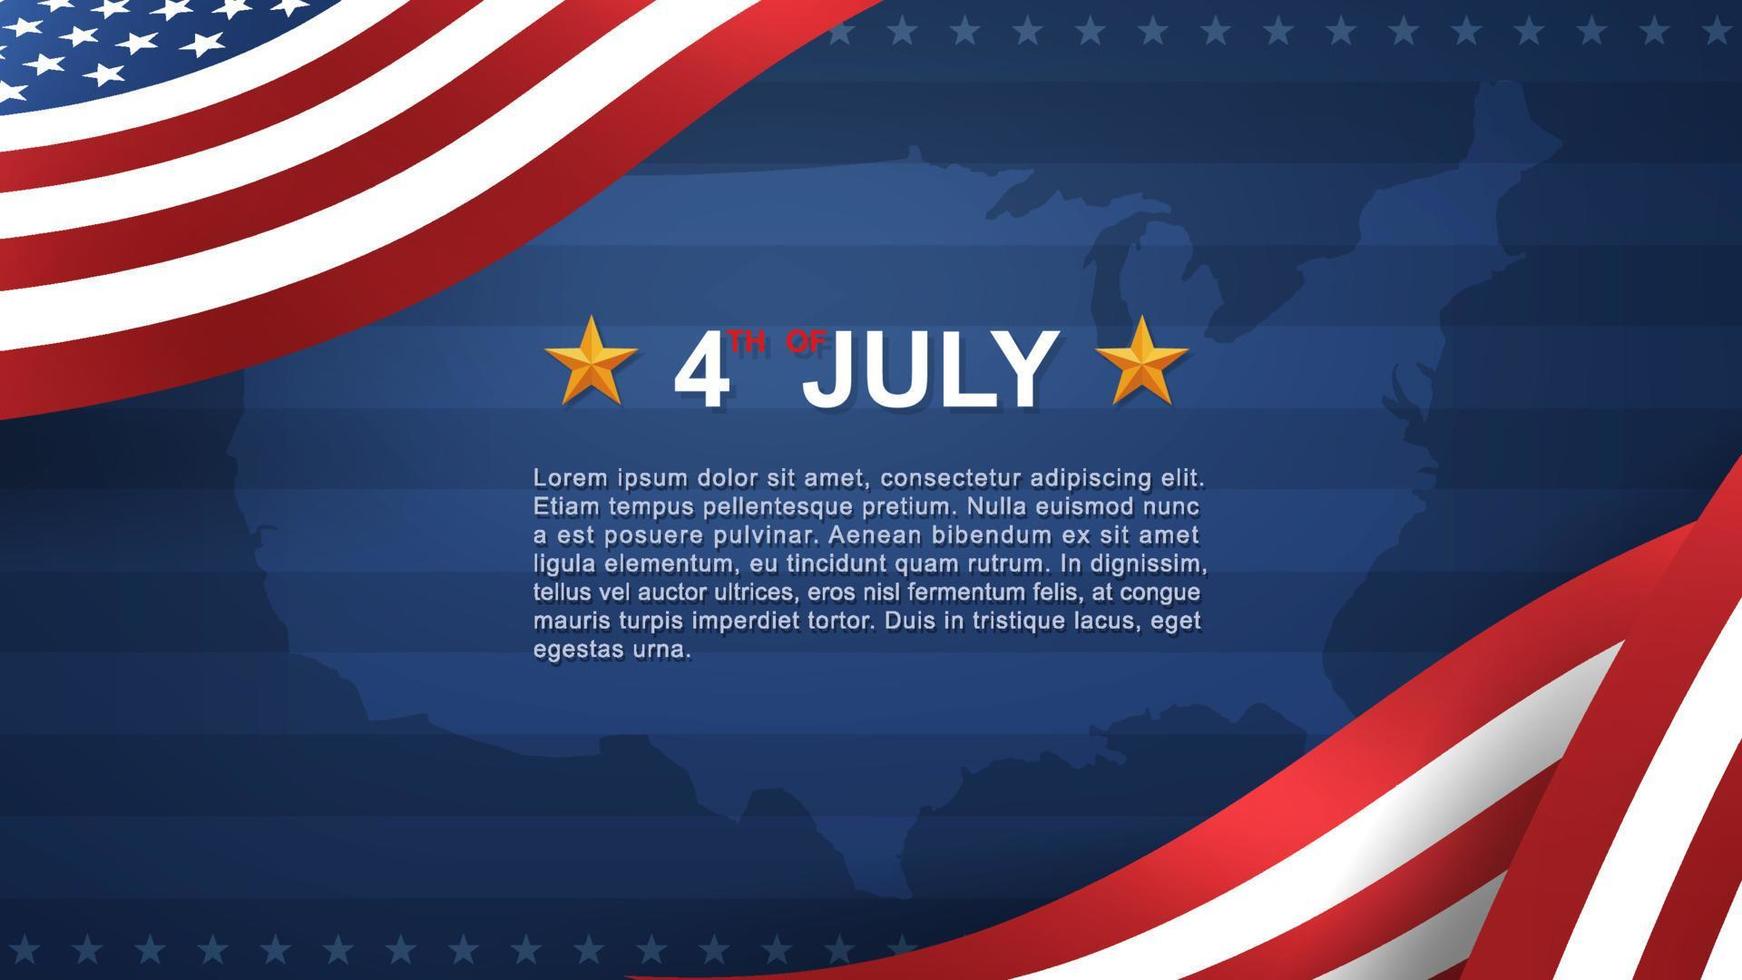 4 luglio sfondo per la festa dell'indipendenza degli Stati Uniti con sfondo blu e bandiera americana. vettore. vettore